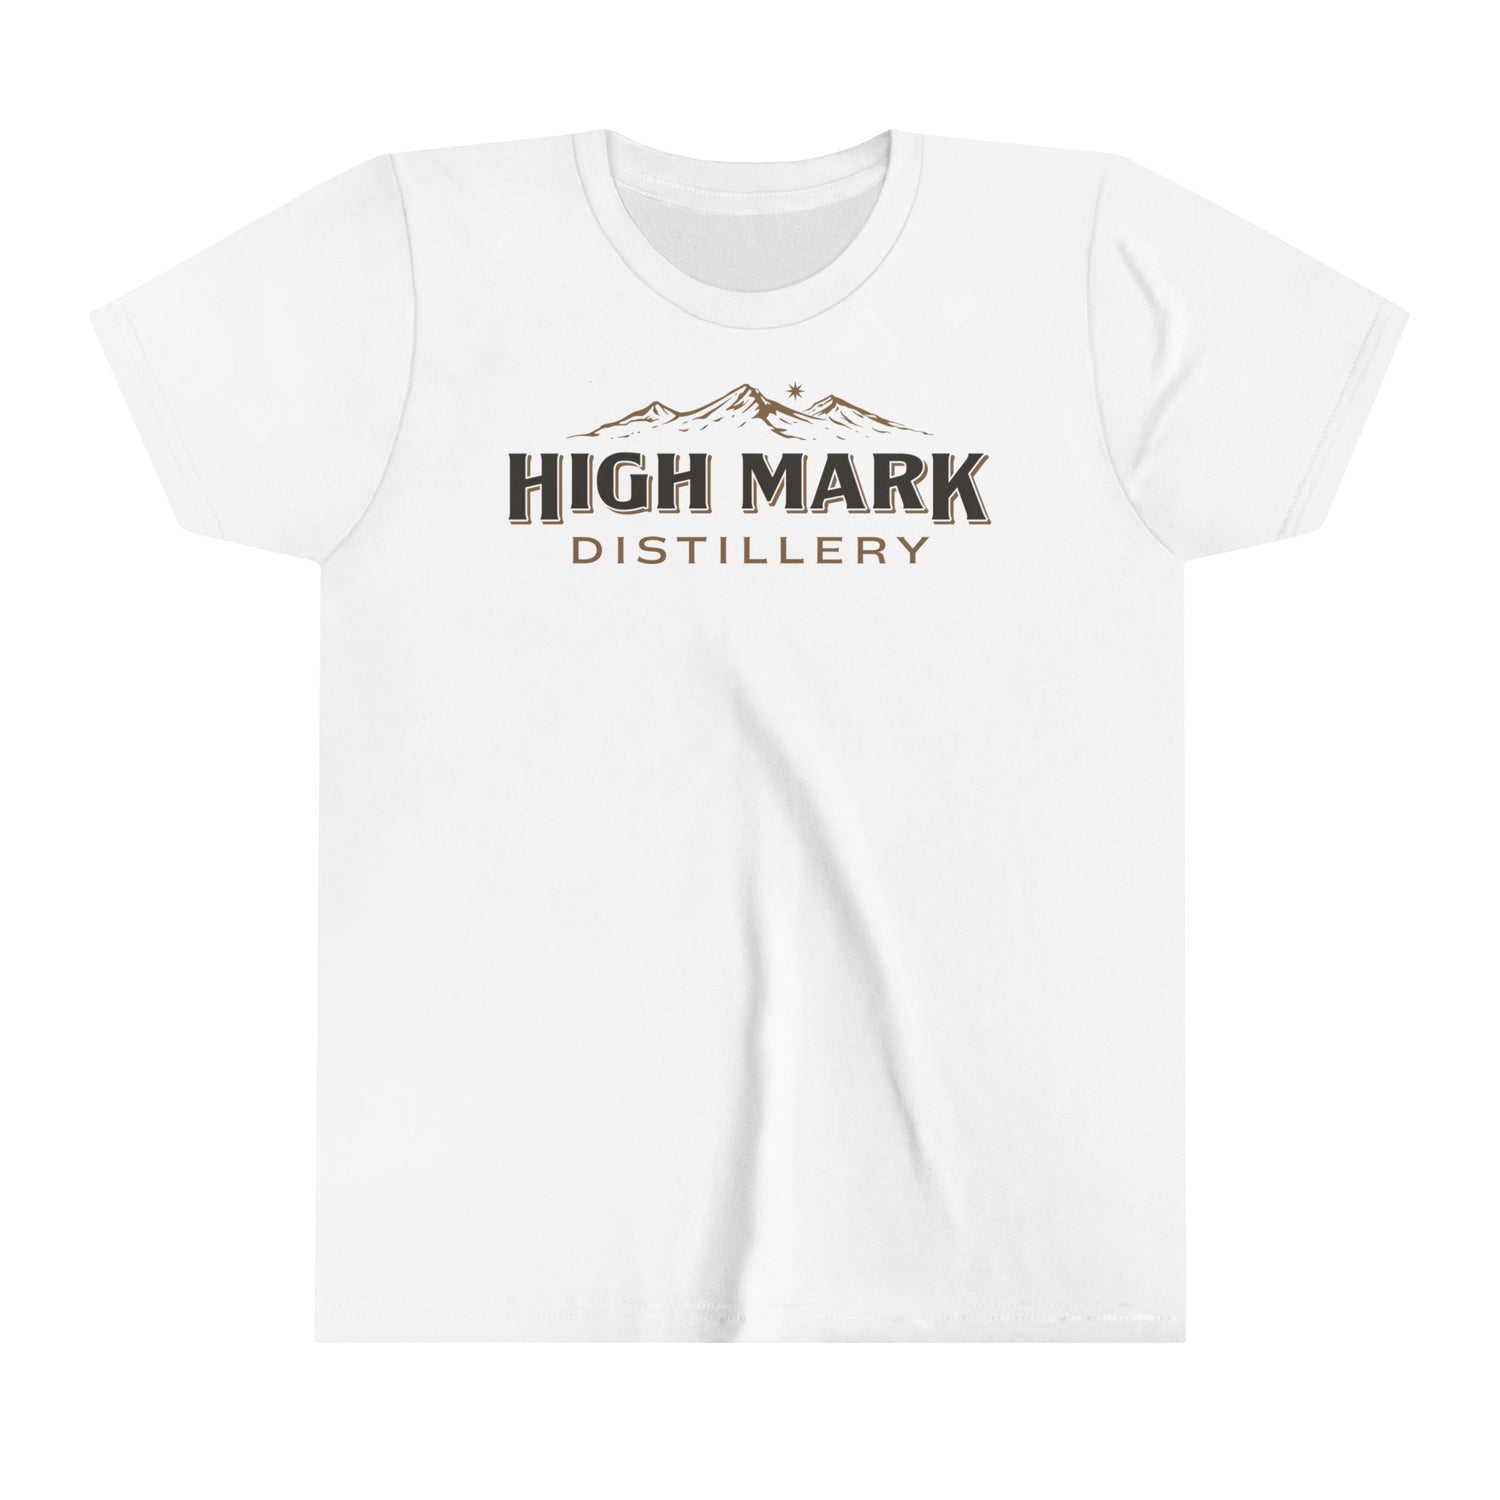 High Mark Distillery - Youth Short Sleeve Tee